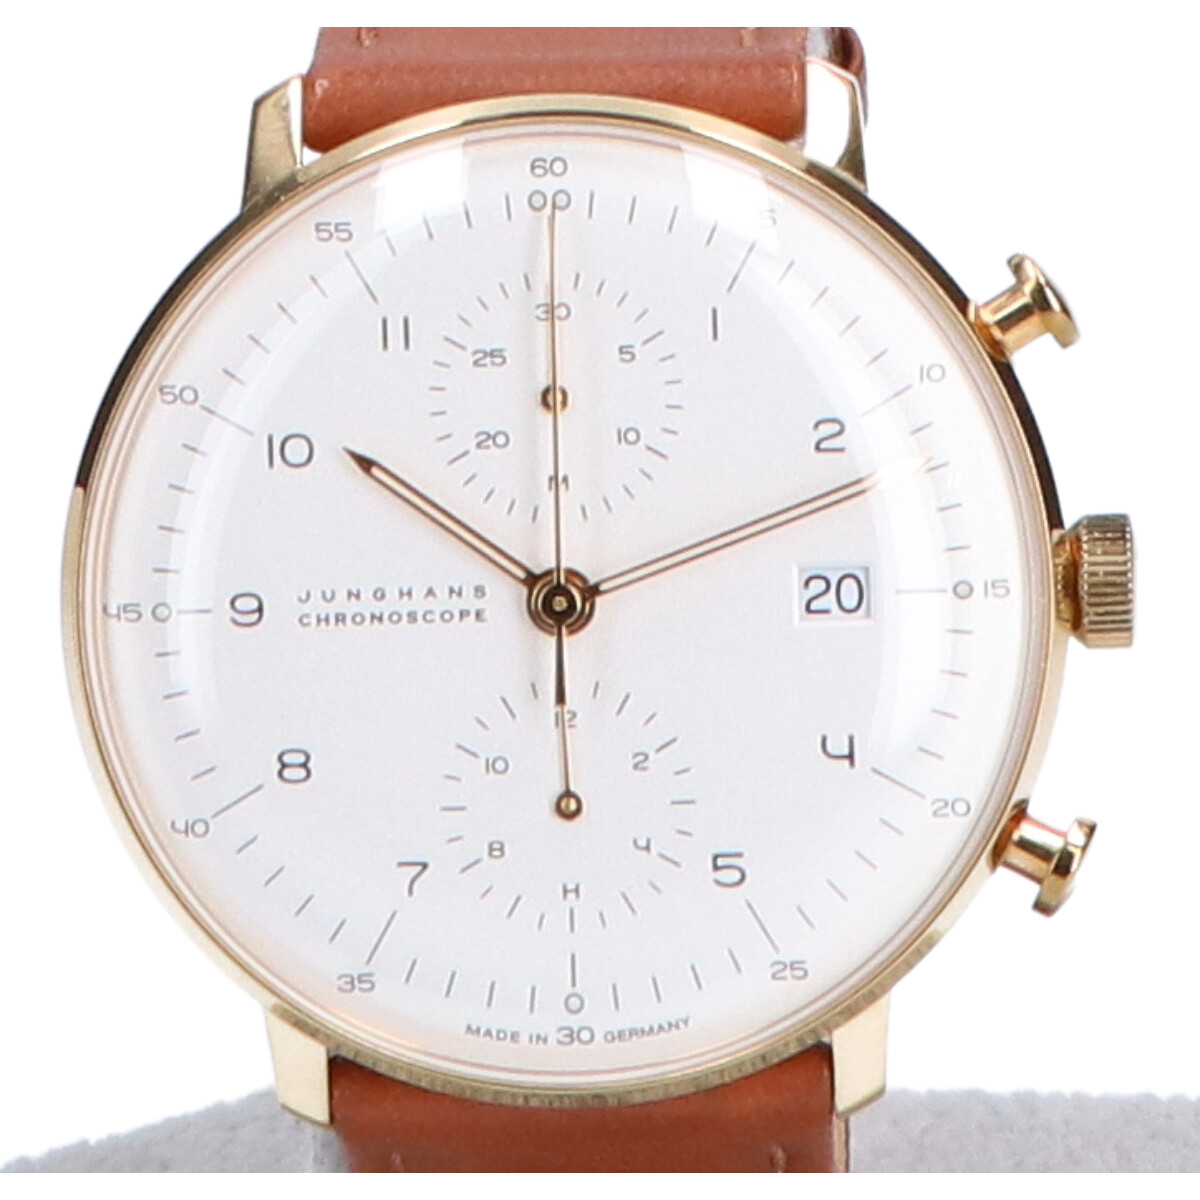 ユンハンスの027/7800-00 Max Bill by Junghans Chronoscope 自動巻き腕時計の買取実績です。